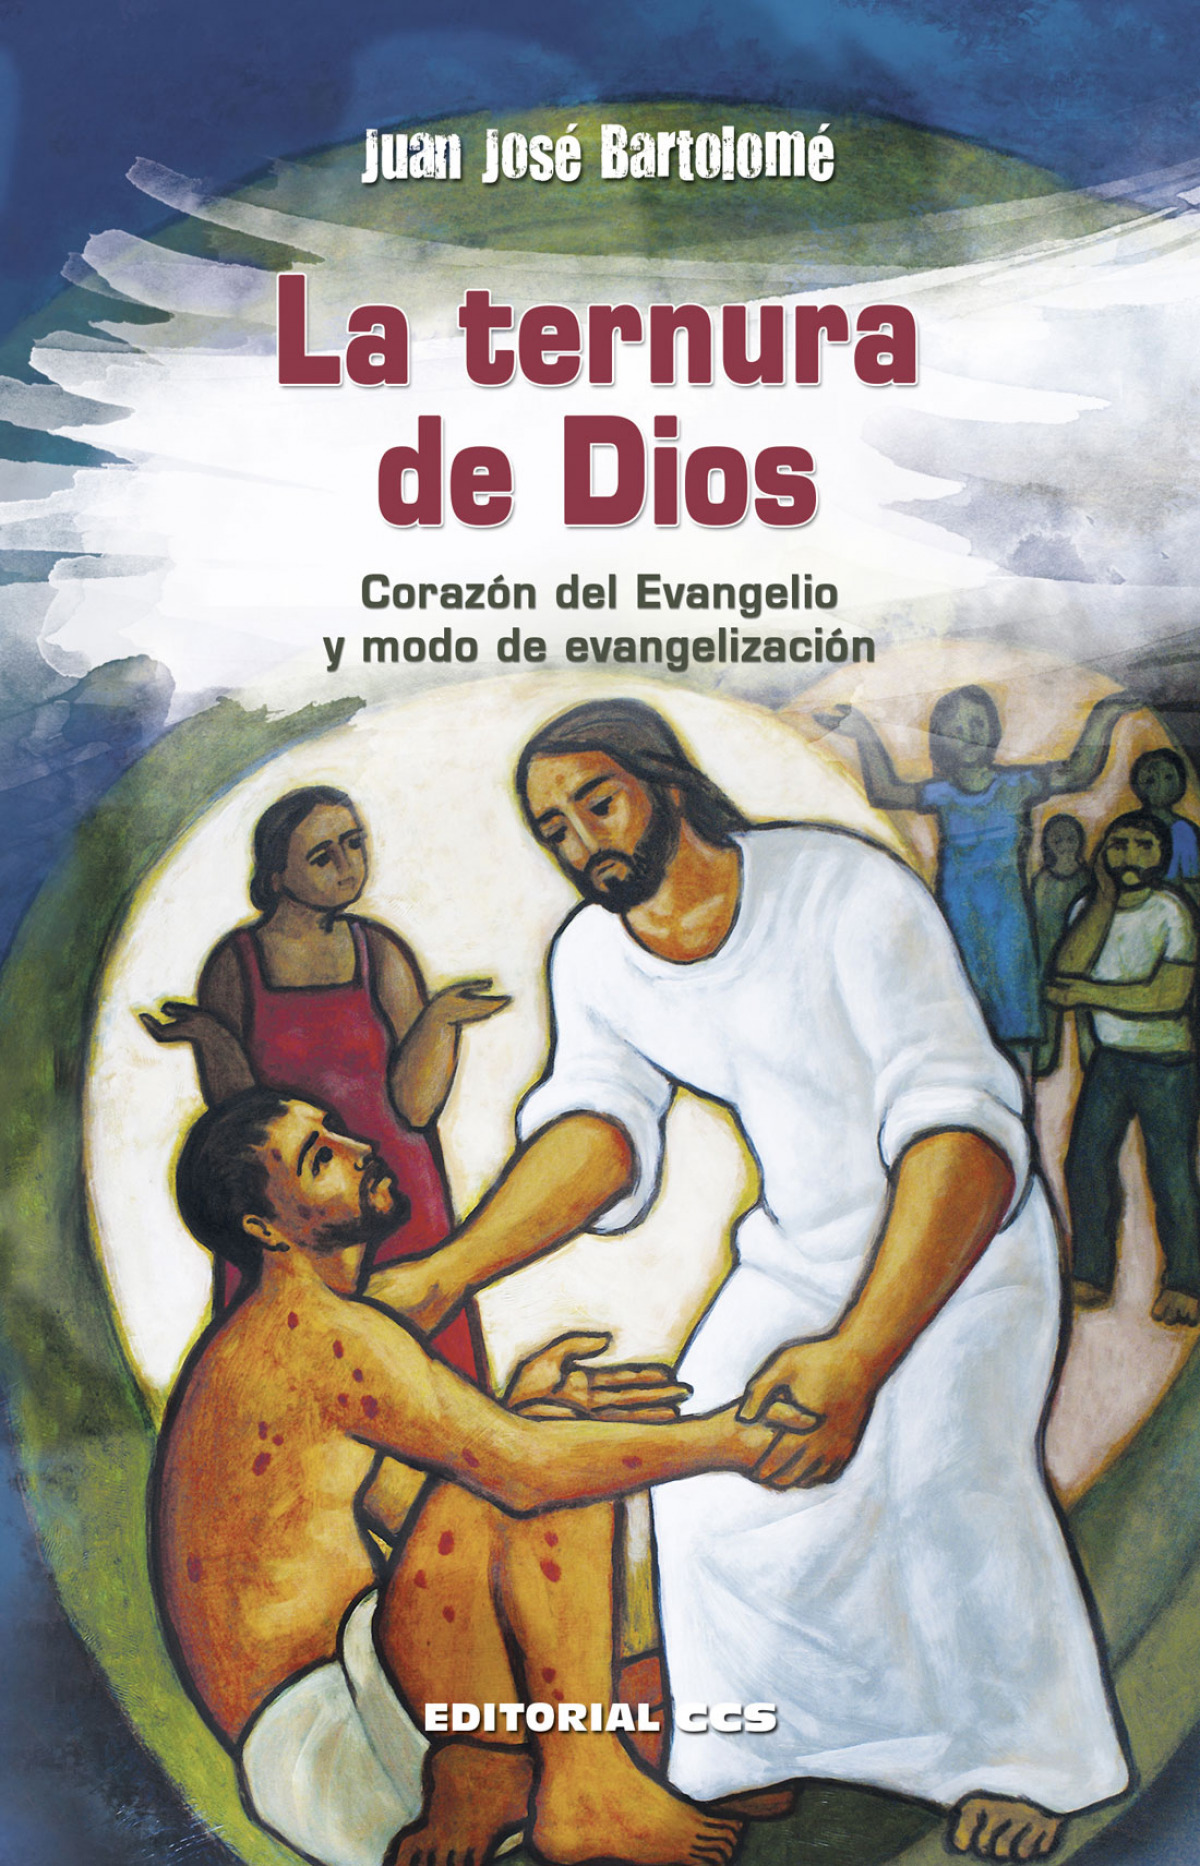 La ternura de dios corazon del evangelio y modo de evangelizacion - Bartolomé Lafuente, Juan José